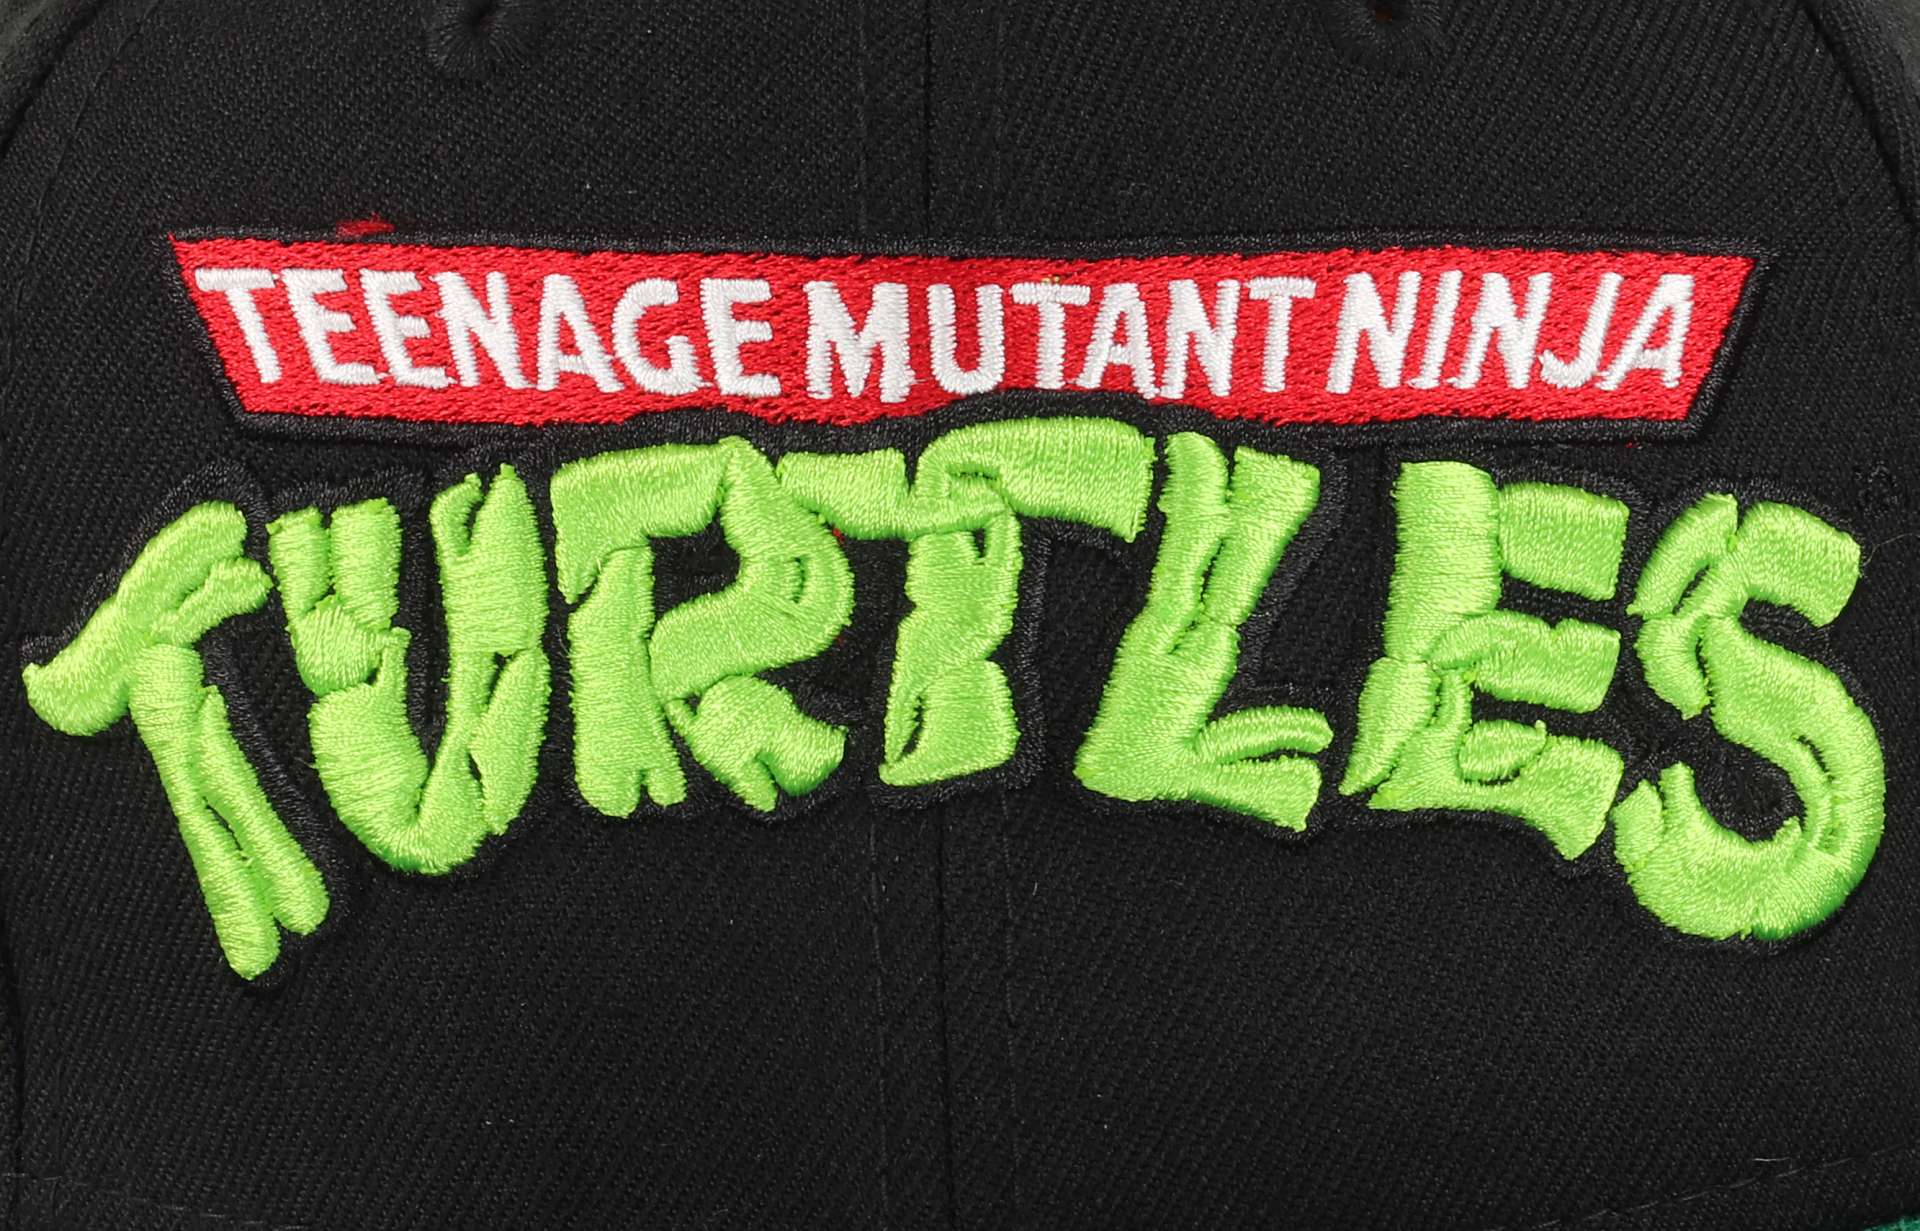 Teenage Mutant Ninja Turtles Logo TMNT Black 9Fifty Snapback Cap New Era